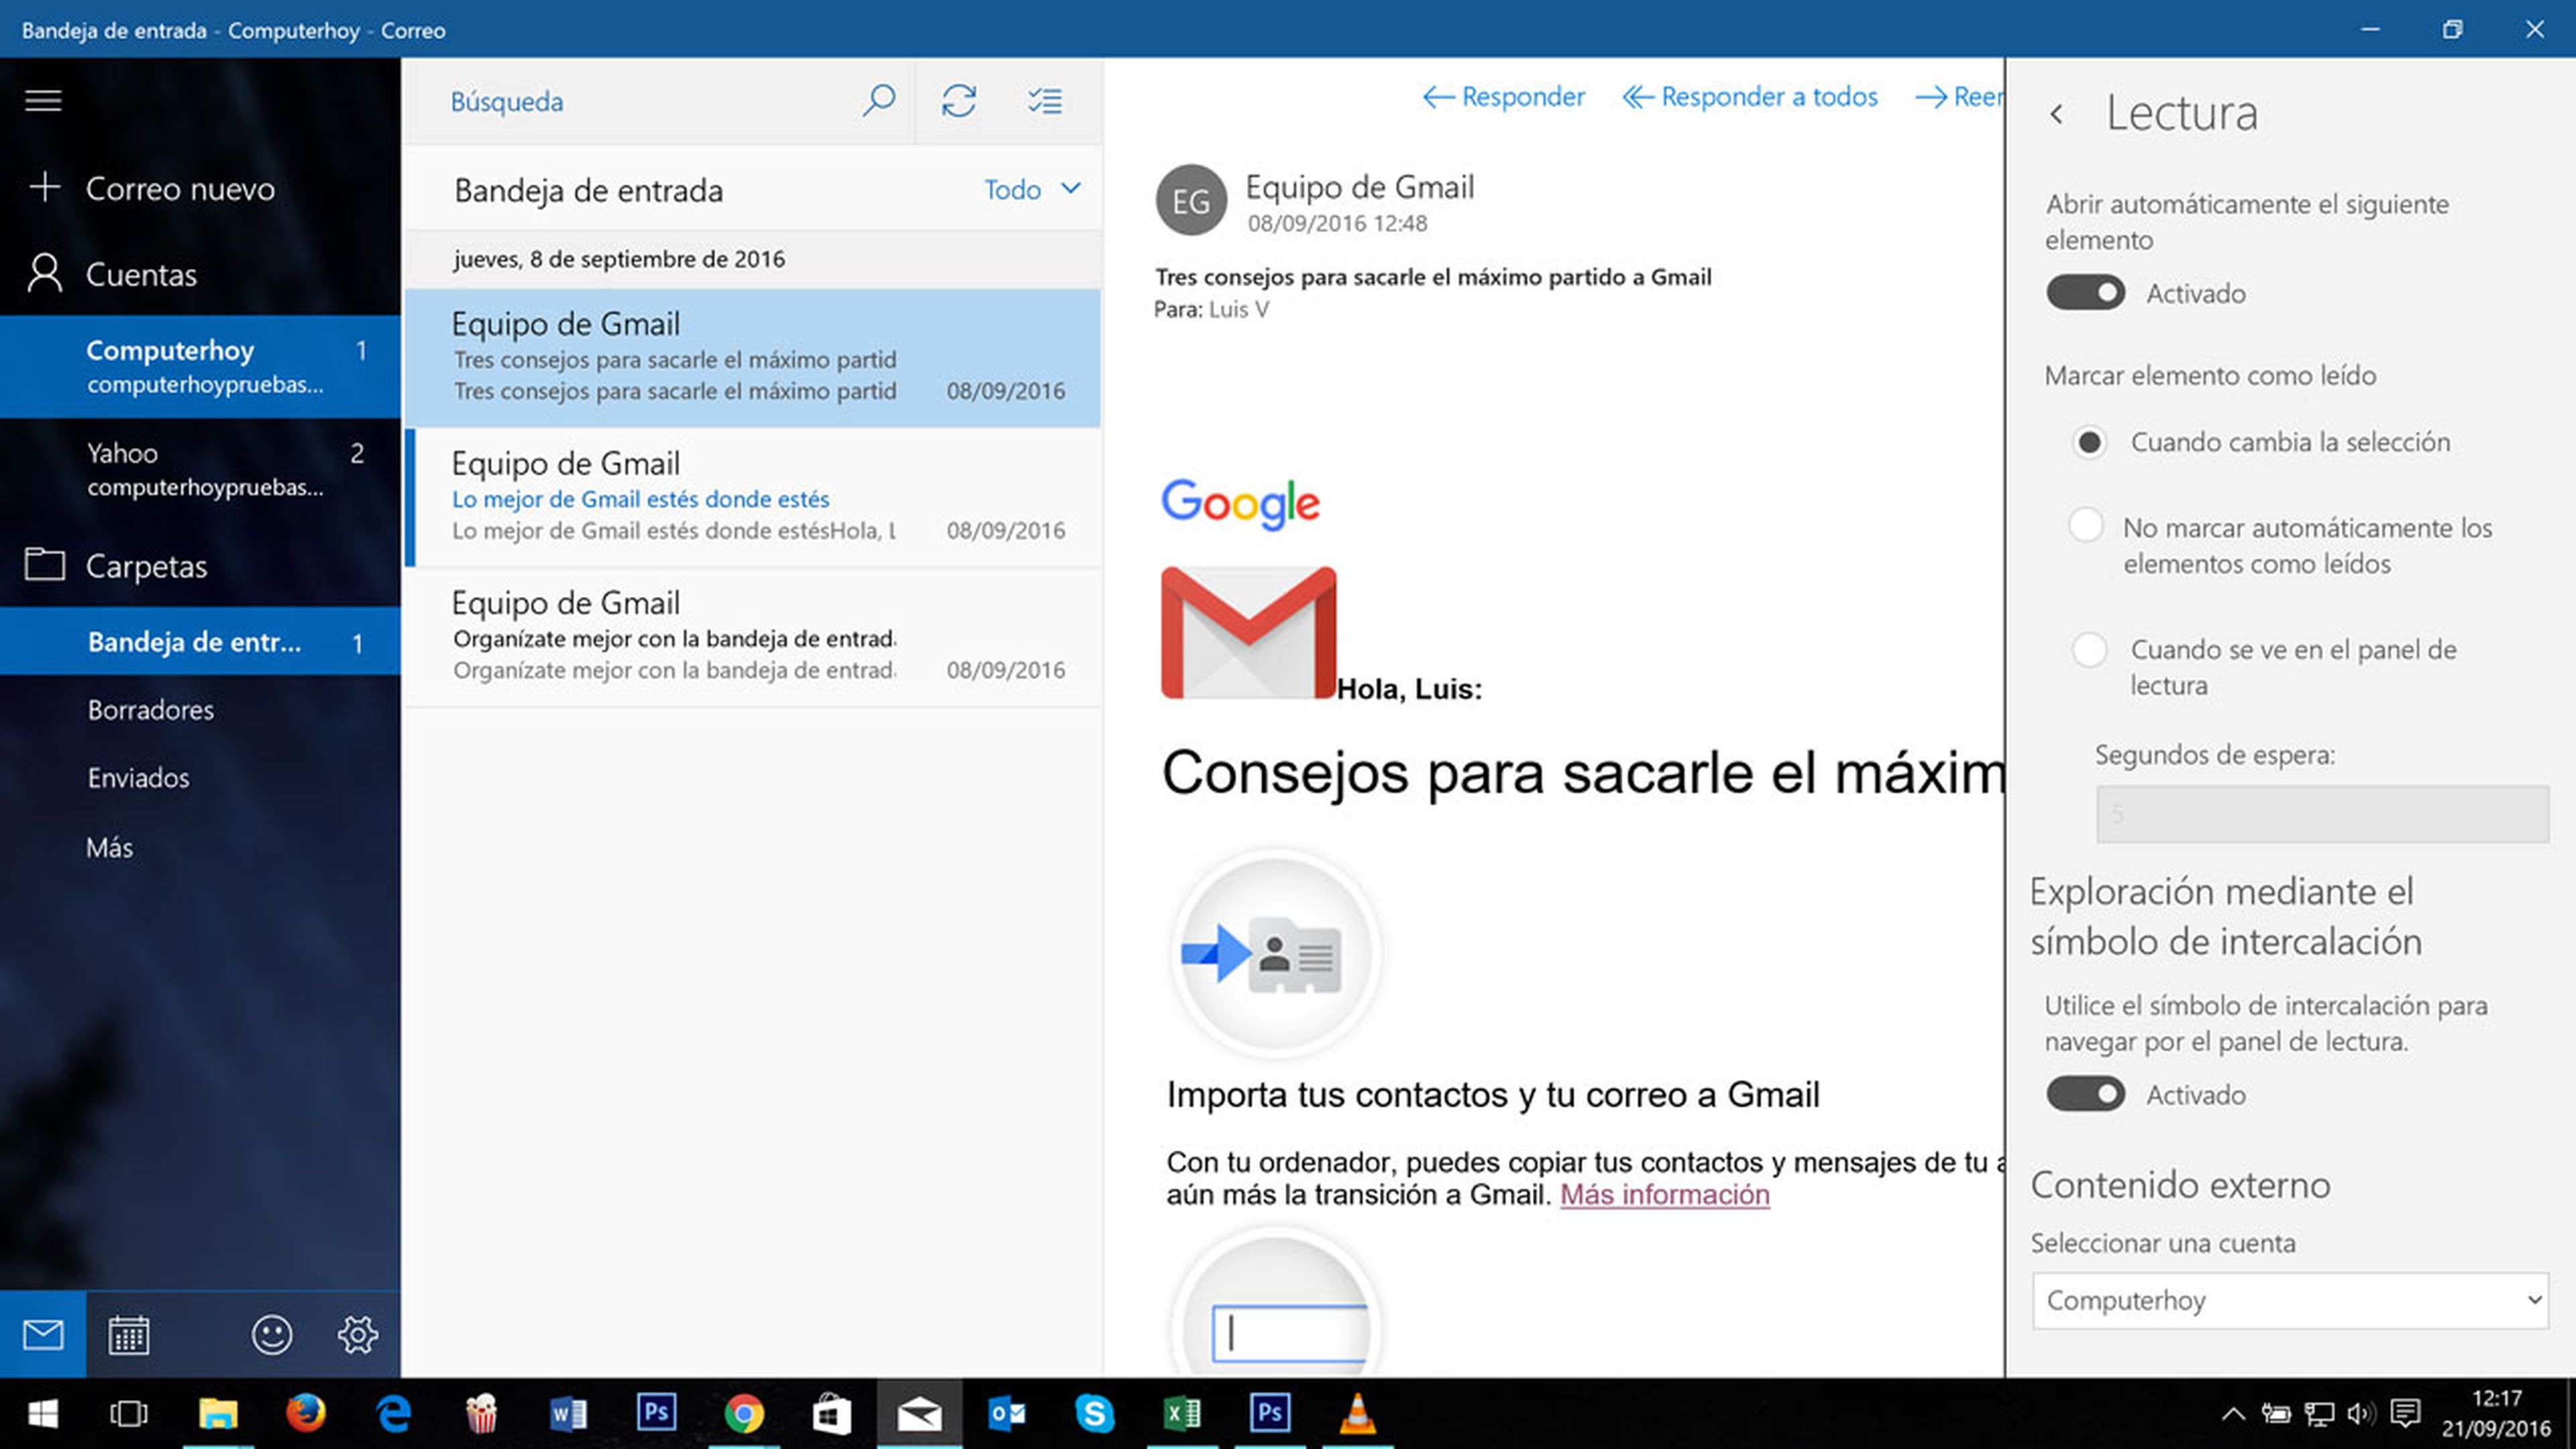 Configuración de lectura en la aplicación de correo de windows 10